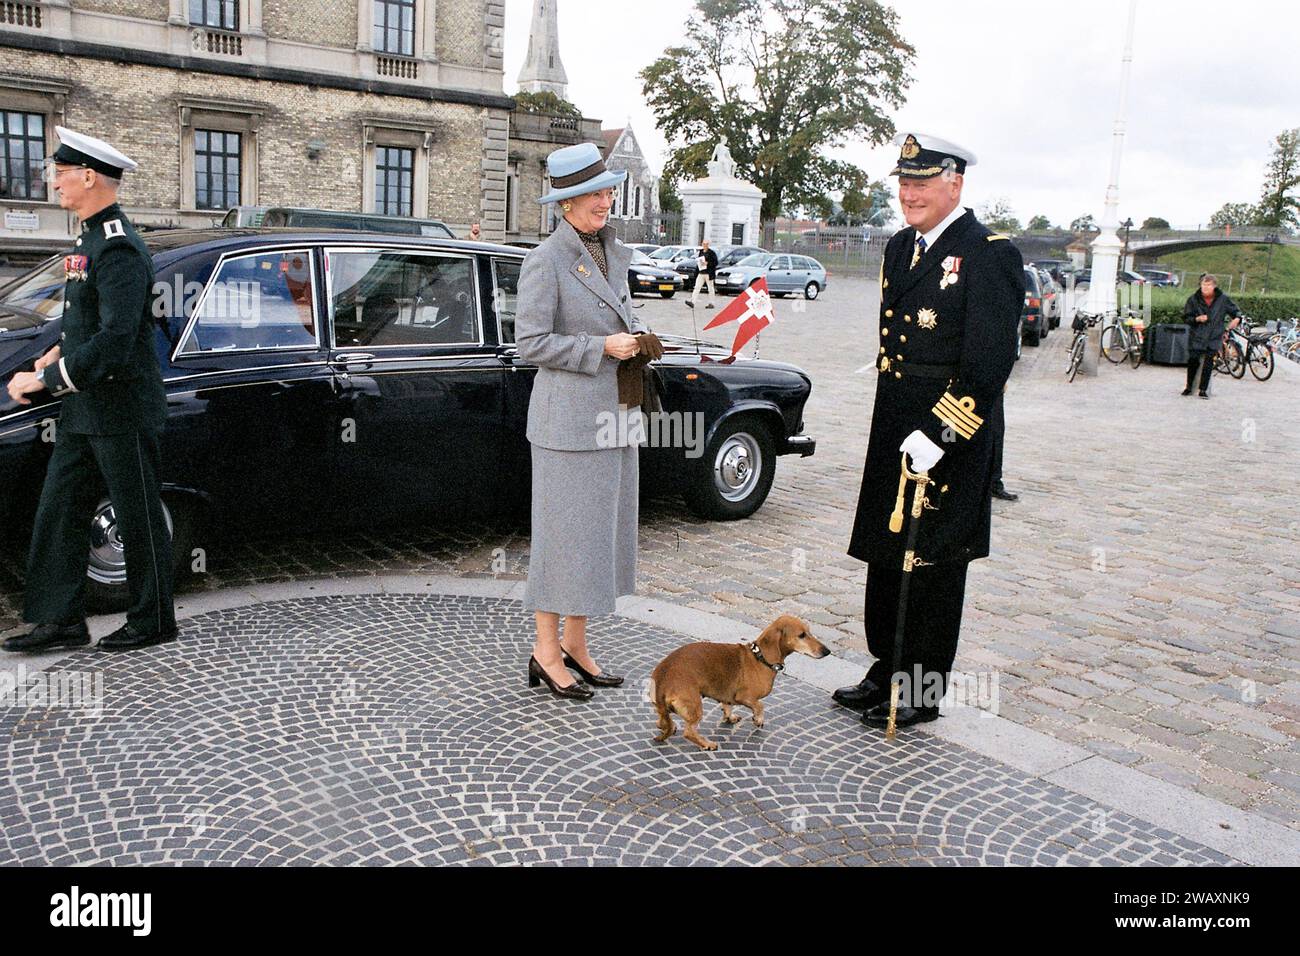 Copenhague, Danemark /21 septembre 2004/ S.M. la Reine Margrethe II de Danemark le prince henrik ou Henri arrive à sali sur le navire de Dannebrog dans la capitale danoise Copenhague. (Photo.Francis Joseph Dean/Dean Pictures) Banque D'Images